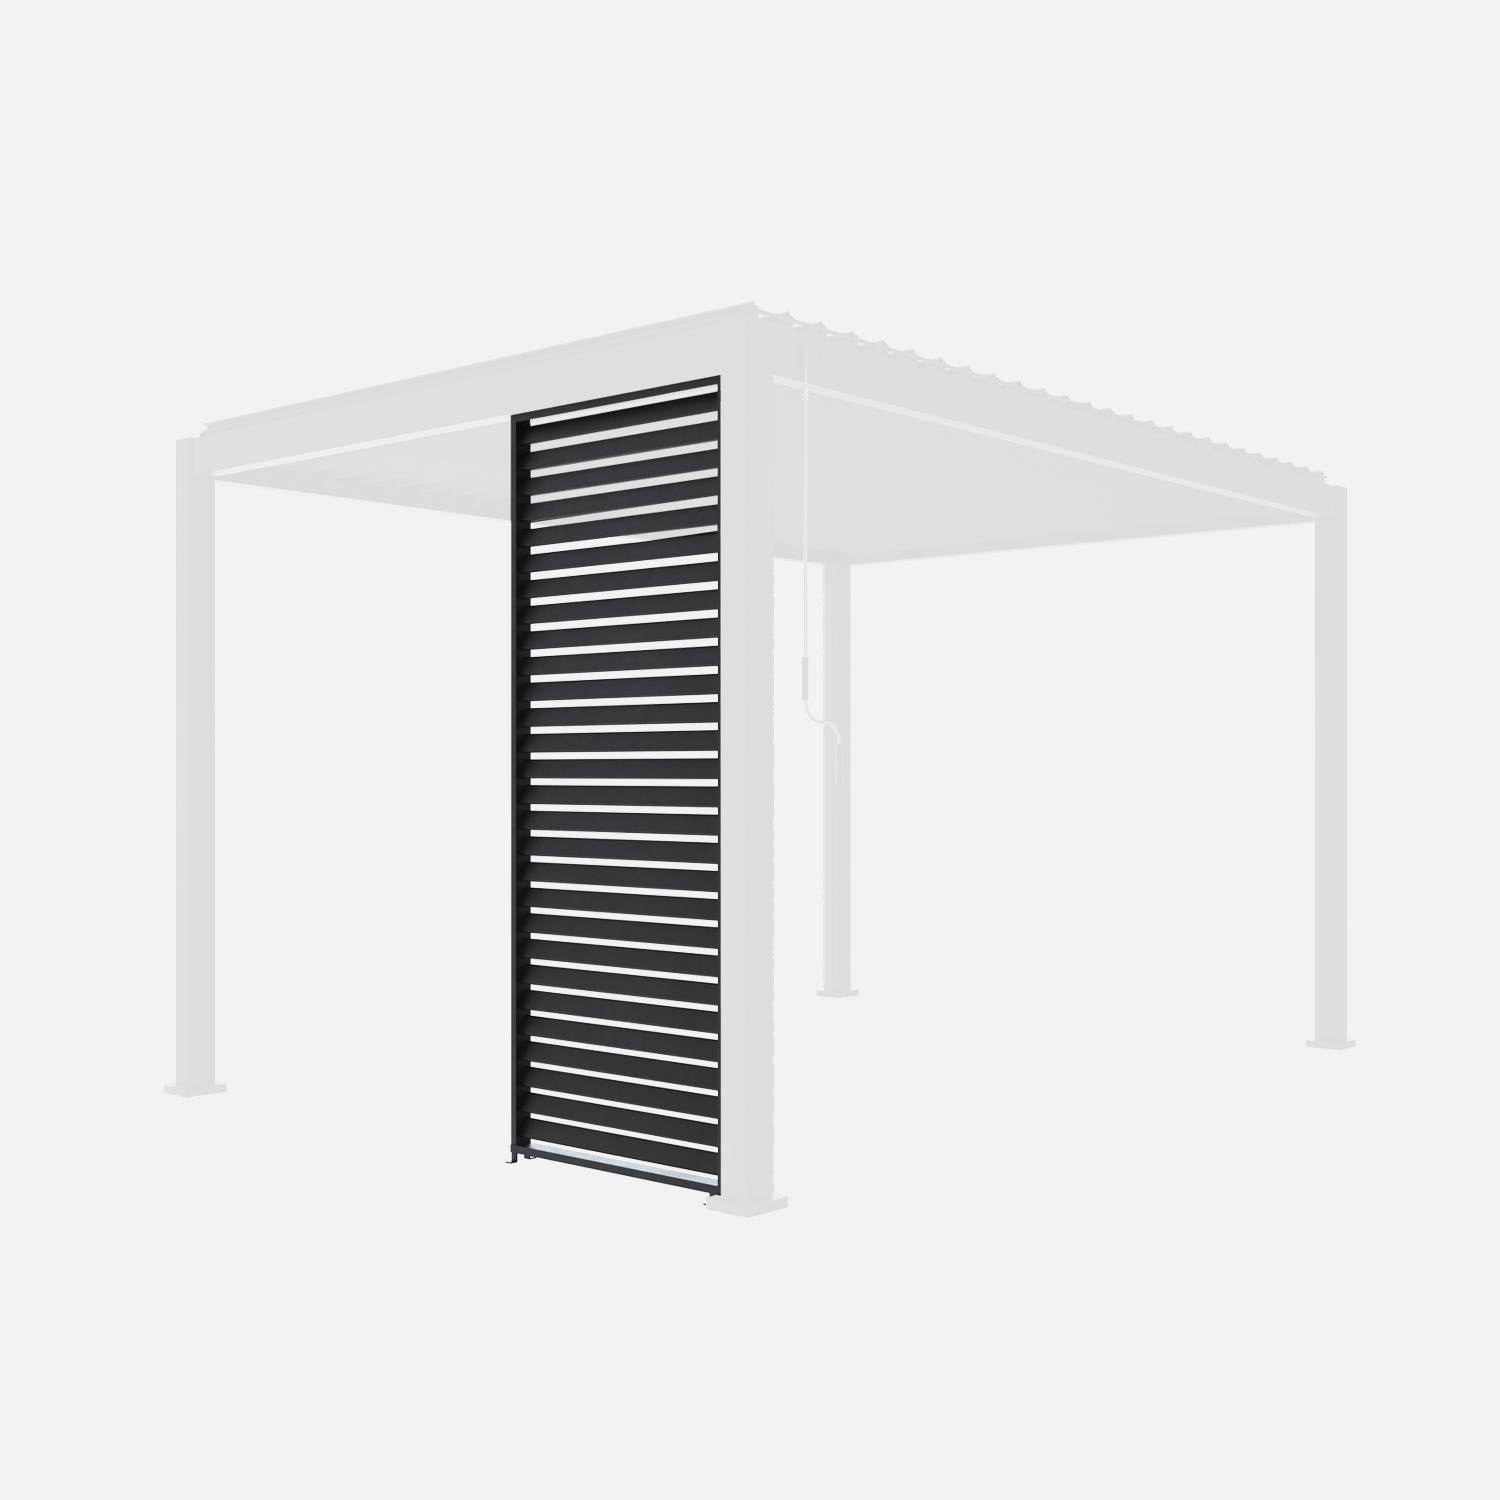 Claustra pour pergola bioclimatique Triomphe, persienne verticale, aluminium, anthracite, 100cm ,sweeek,Photo3